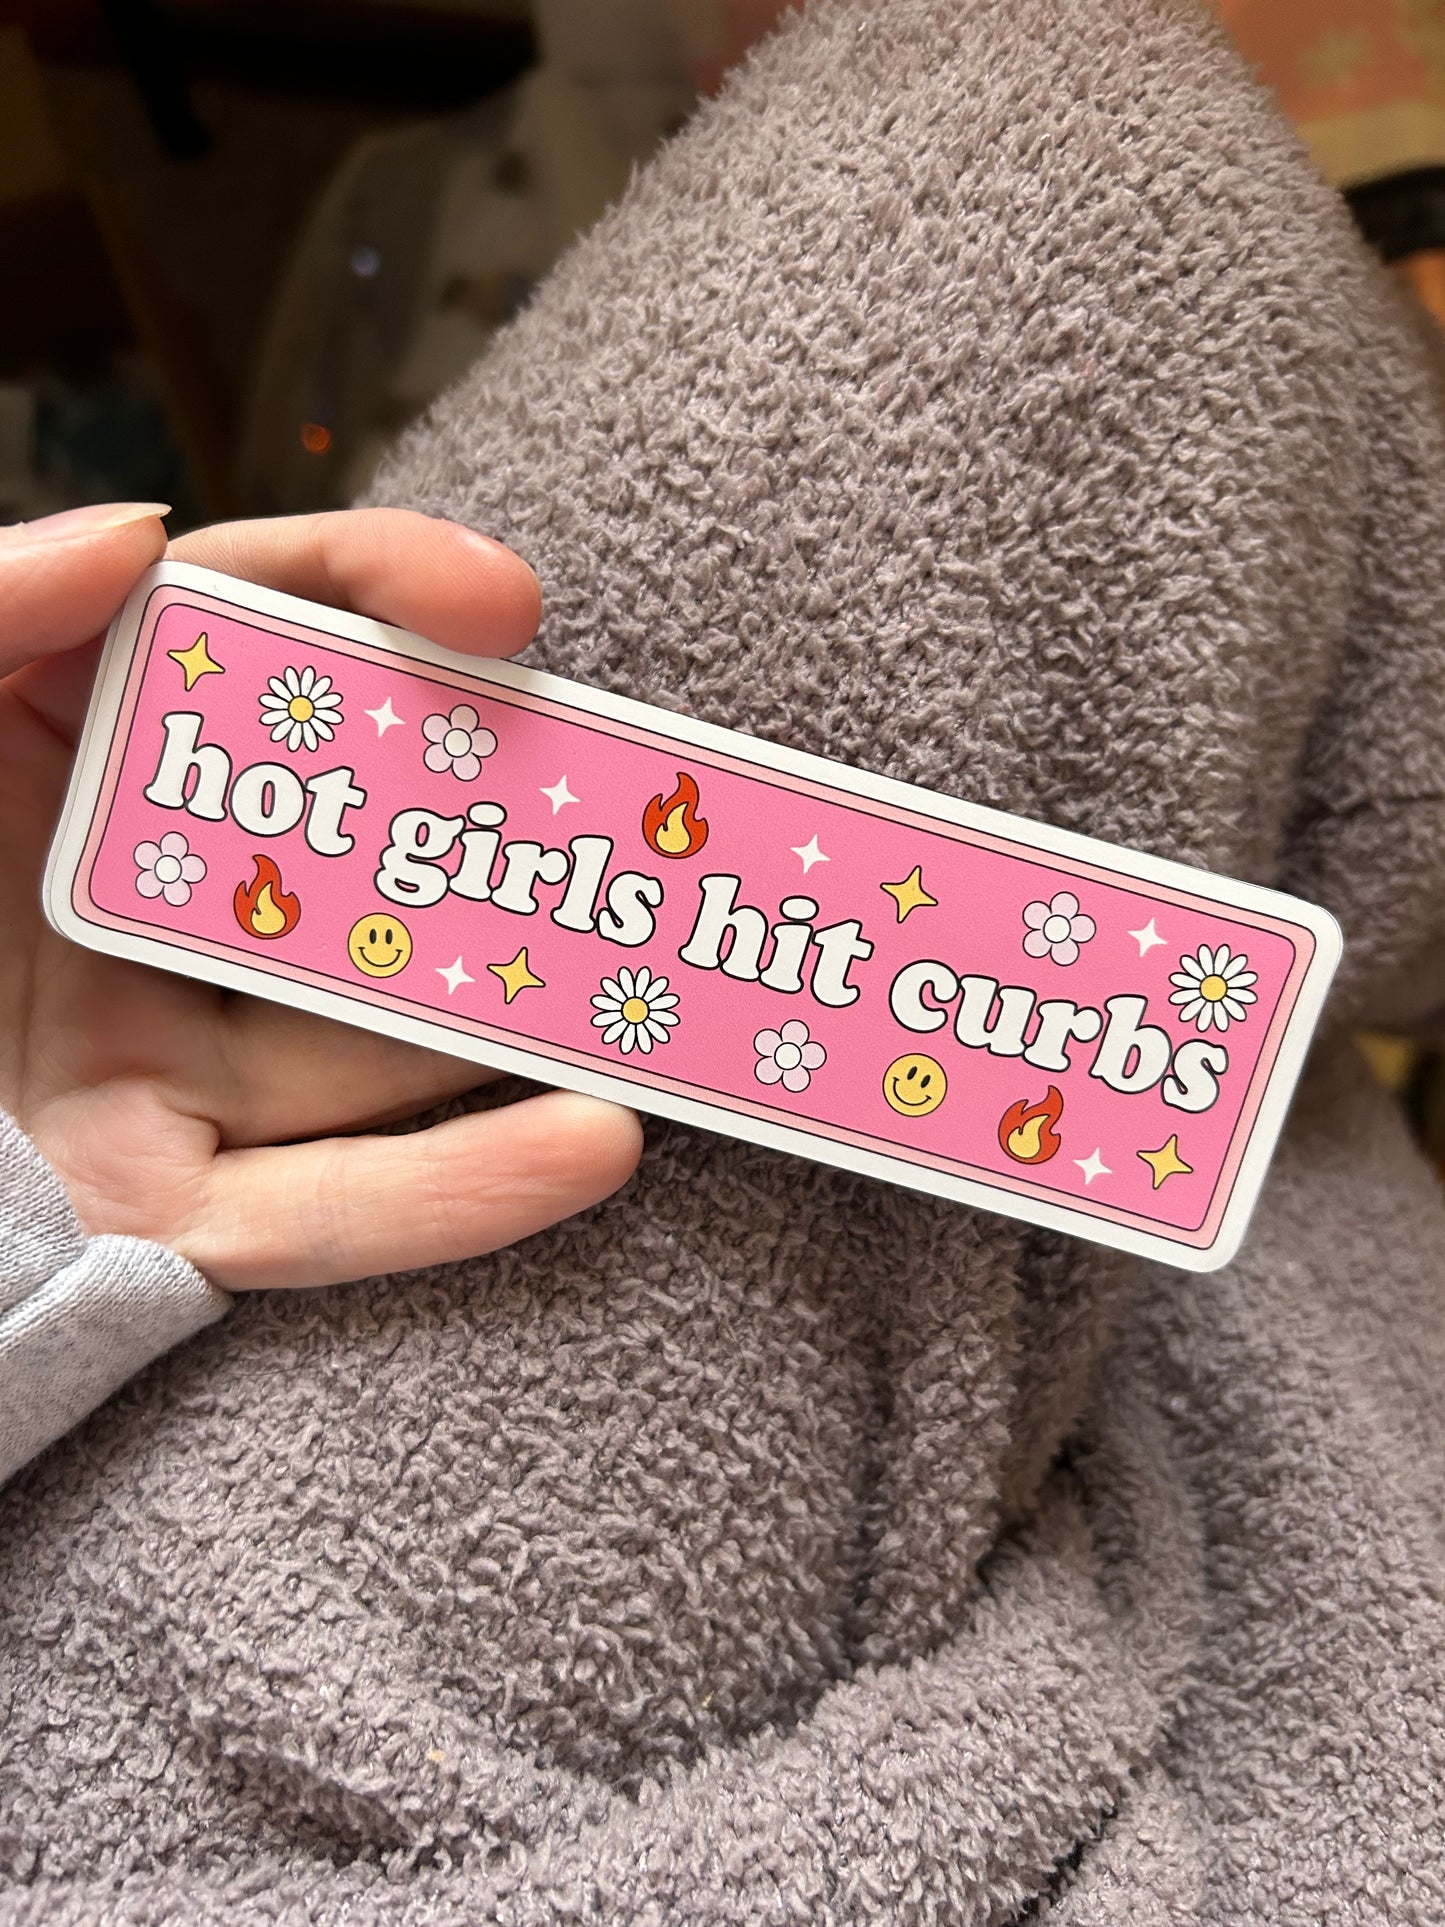 Hot Girls Hit Curbs Car Magnet RTS